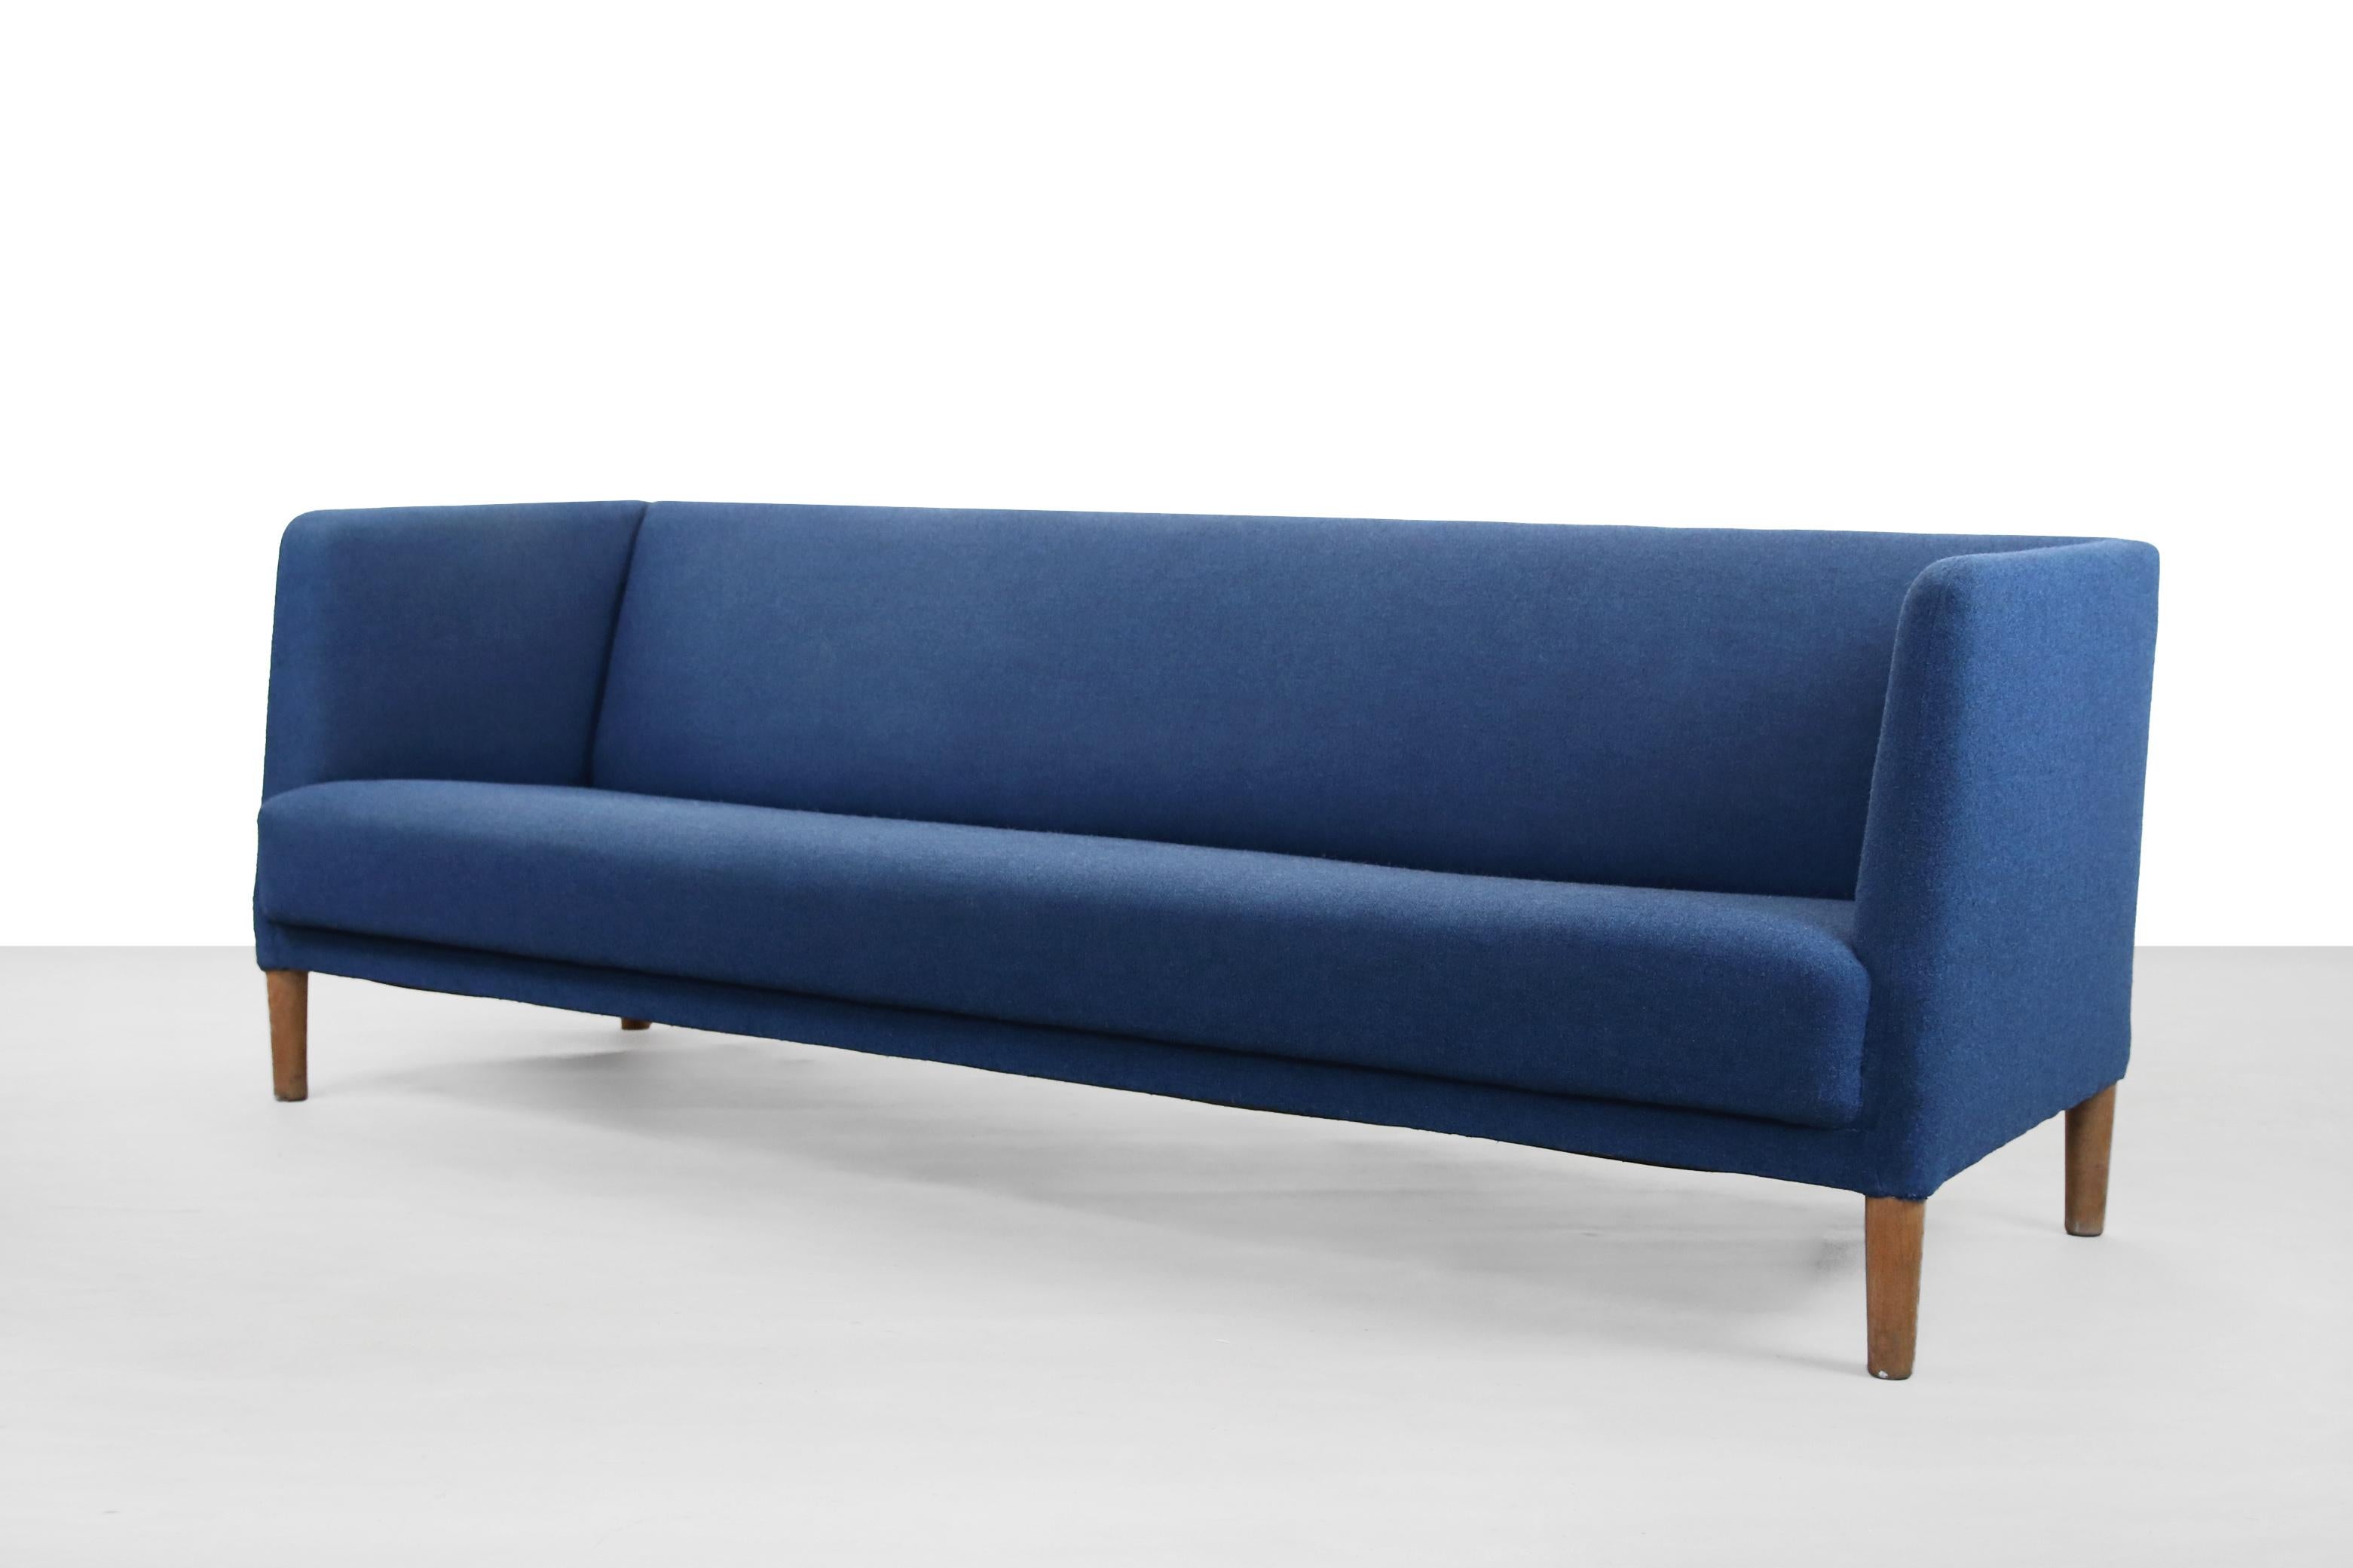 Dänisches modernistisches Sofa, entworfen vom berühmten Designer Hans J. Wegner und hergestellt von Johannes Hansen in den 1950er Jahren in Dänemark. Das Sofa hat massive Eichenbeine und ist mit einem blauen Wollstoff von Kvadrat Tonica 2 Farbe 773